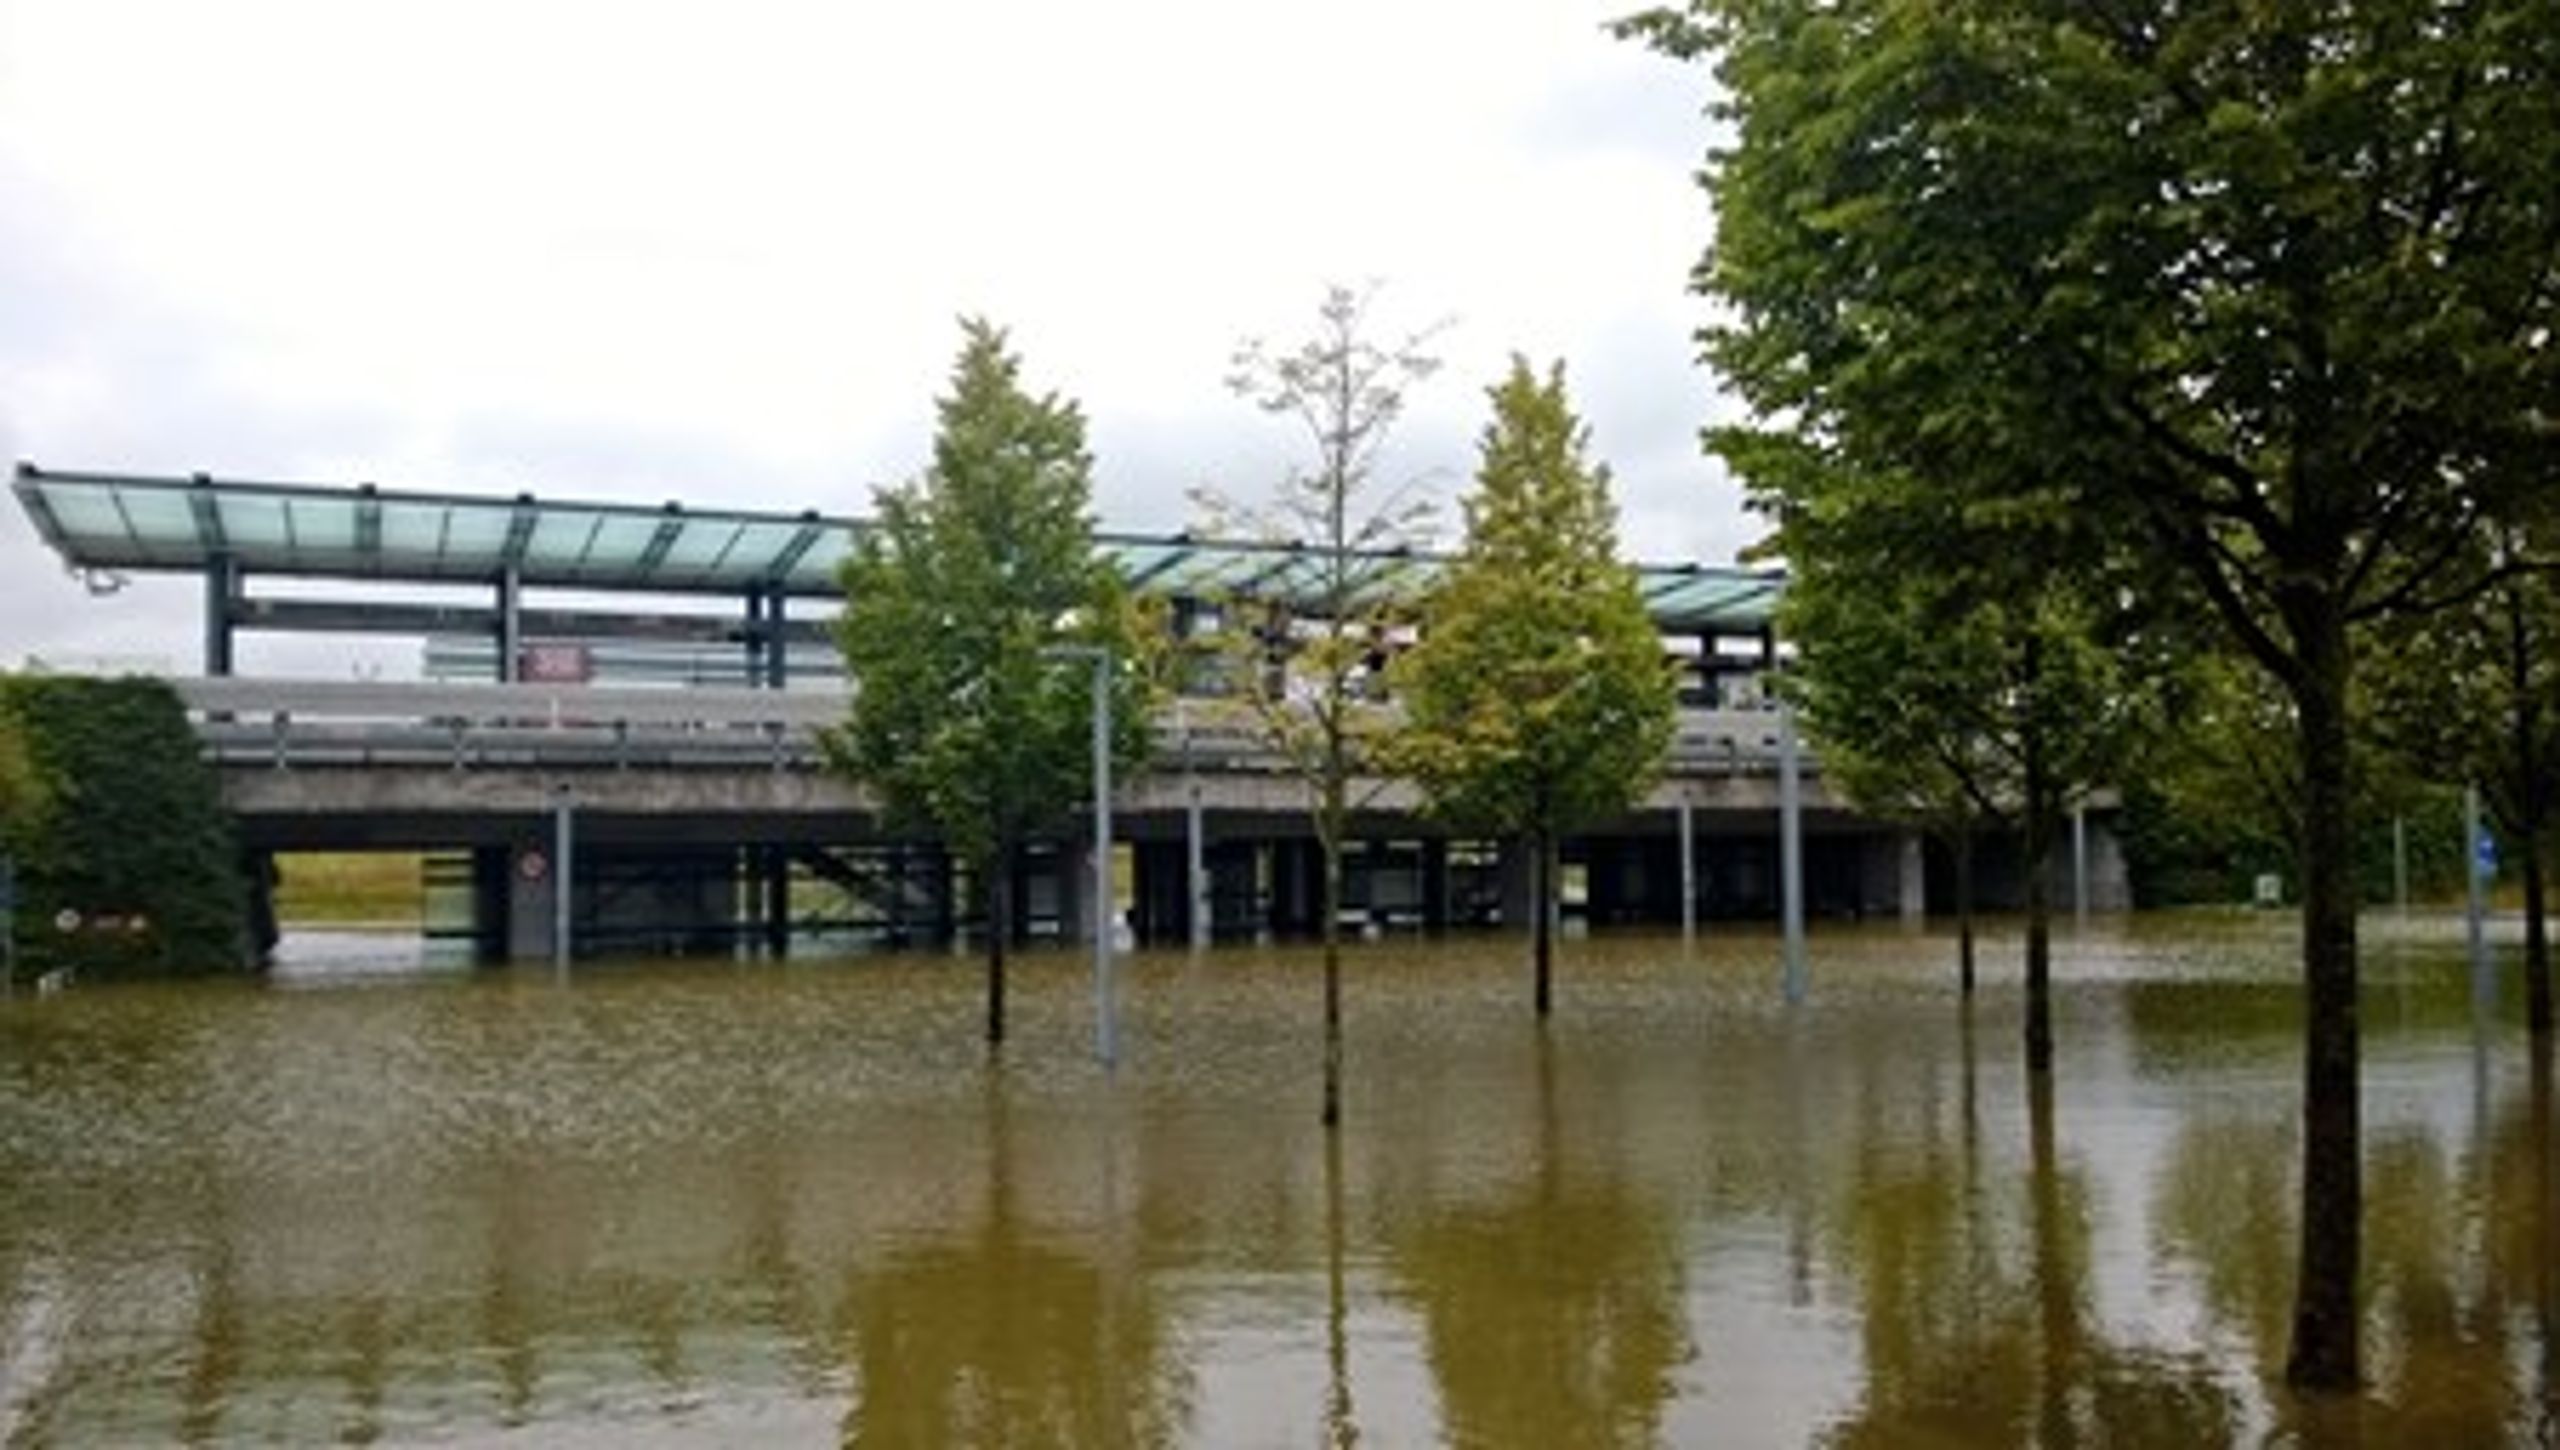 En klimatilpasningslov skal ifølge SF hjælpe til at&nbsp;forhindre oversvømmelser som dem, der de seneste år flere gange har ramt København hårdt. Forslaget bakkes op fra begge sider af Folketingssalen.